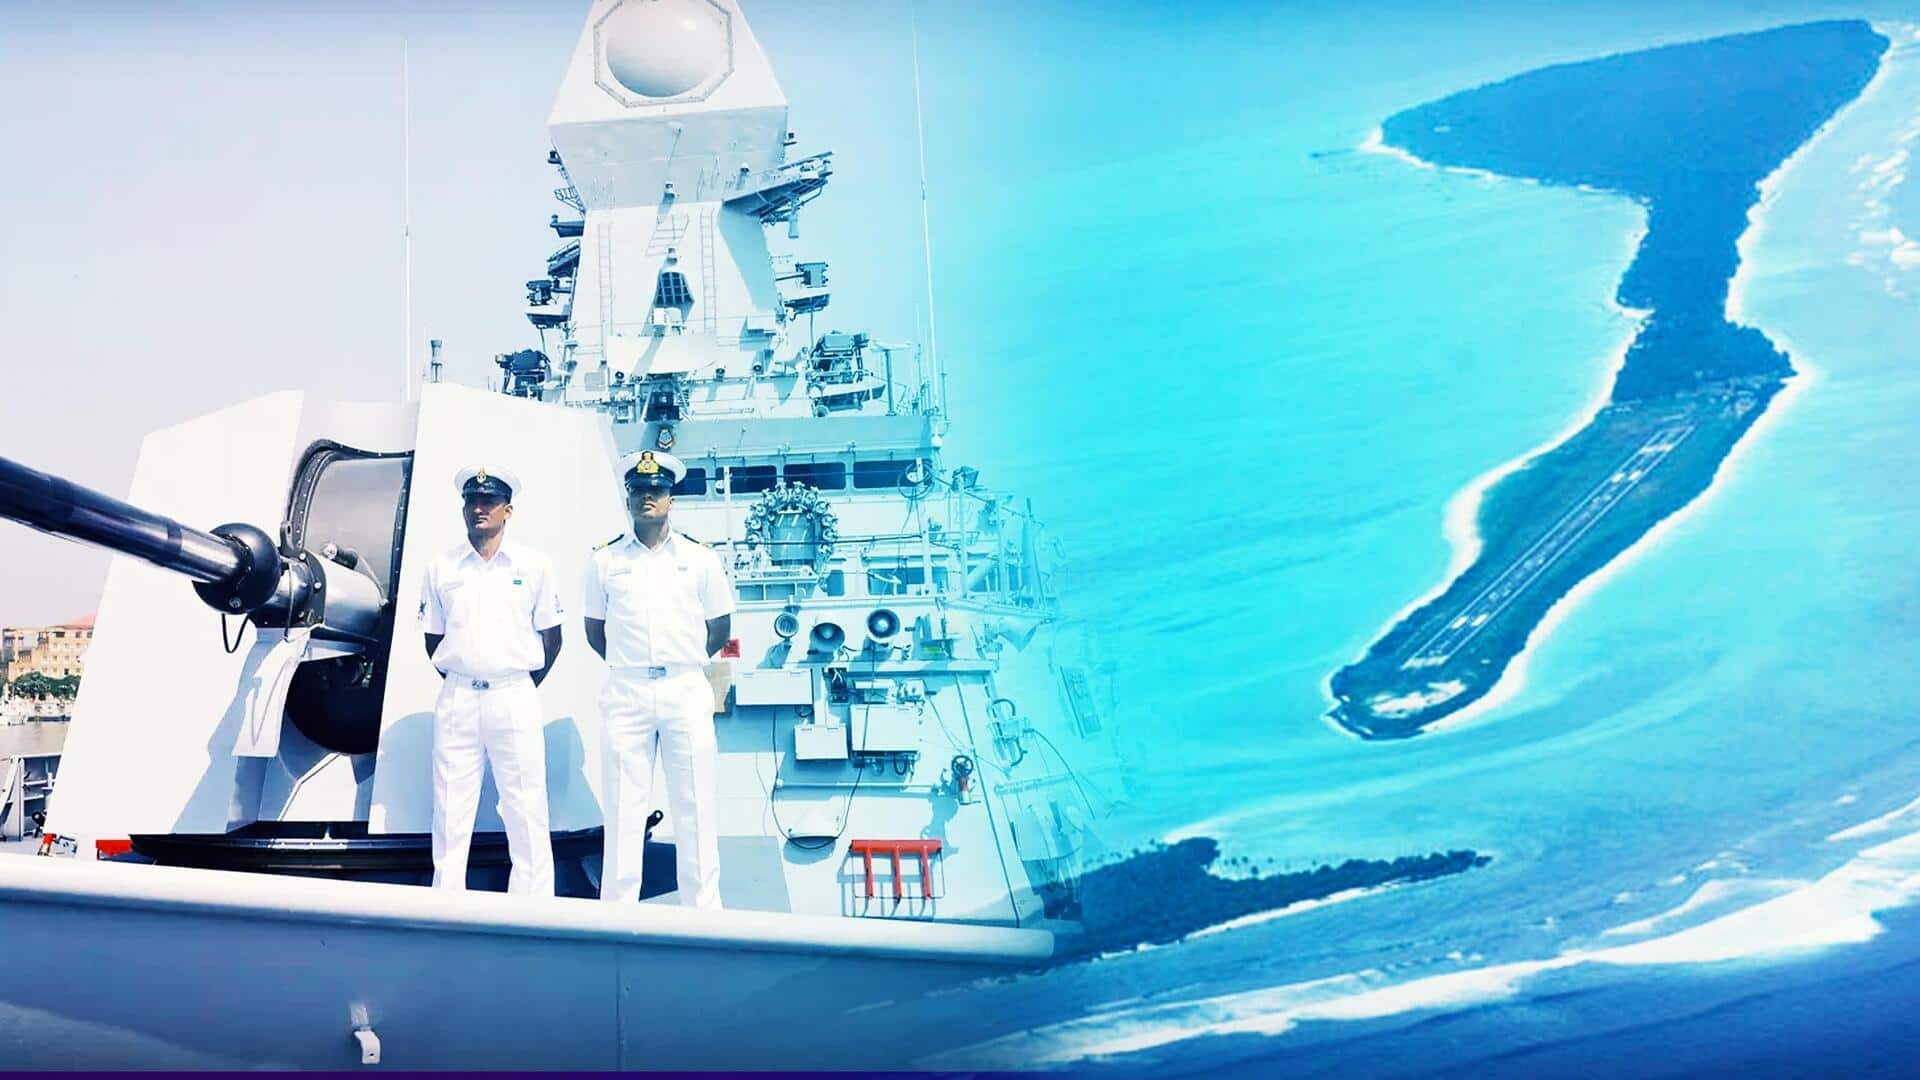 लक्षद्वीप के मिनिकॉय और अगाट्टी द्वीप पर नौसैनिक अड्डे बनाएगा भारत, जानें कैसे अहम साबित होंगे